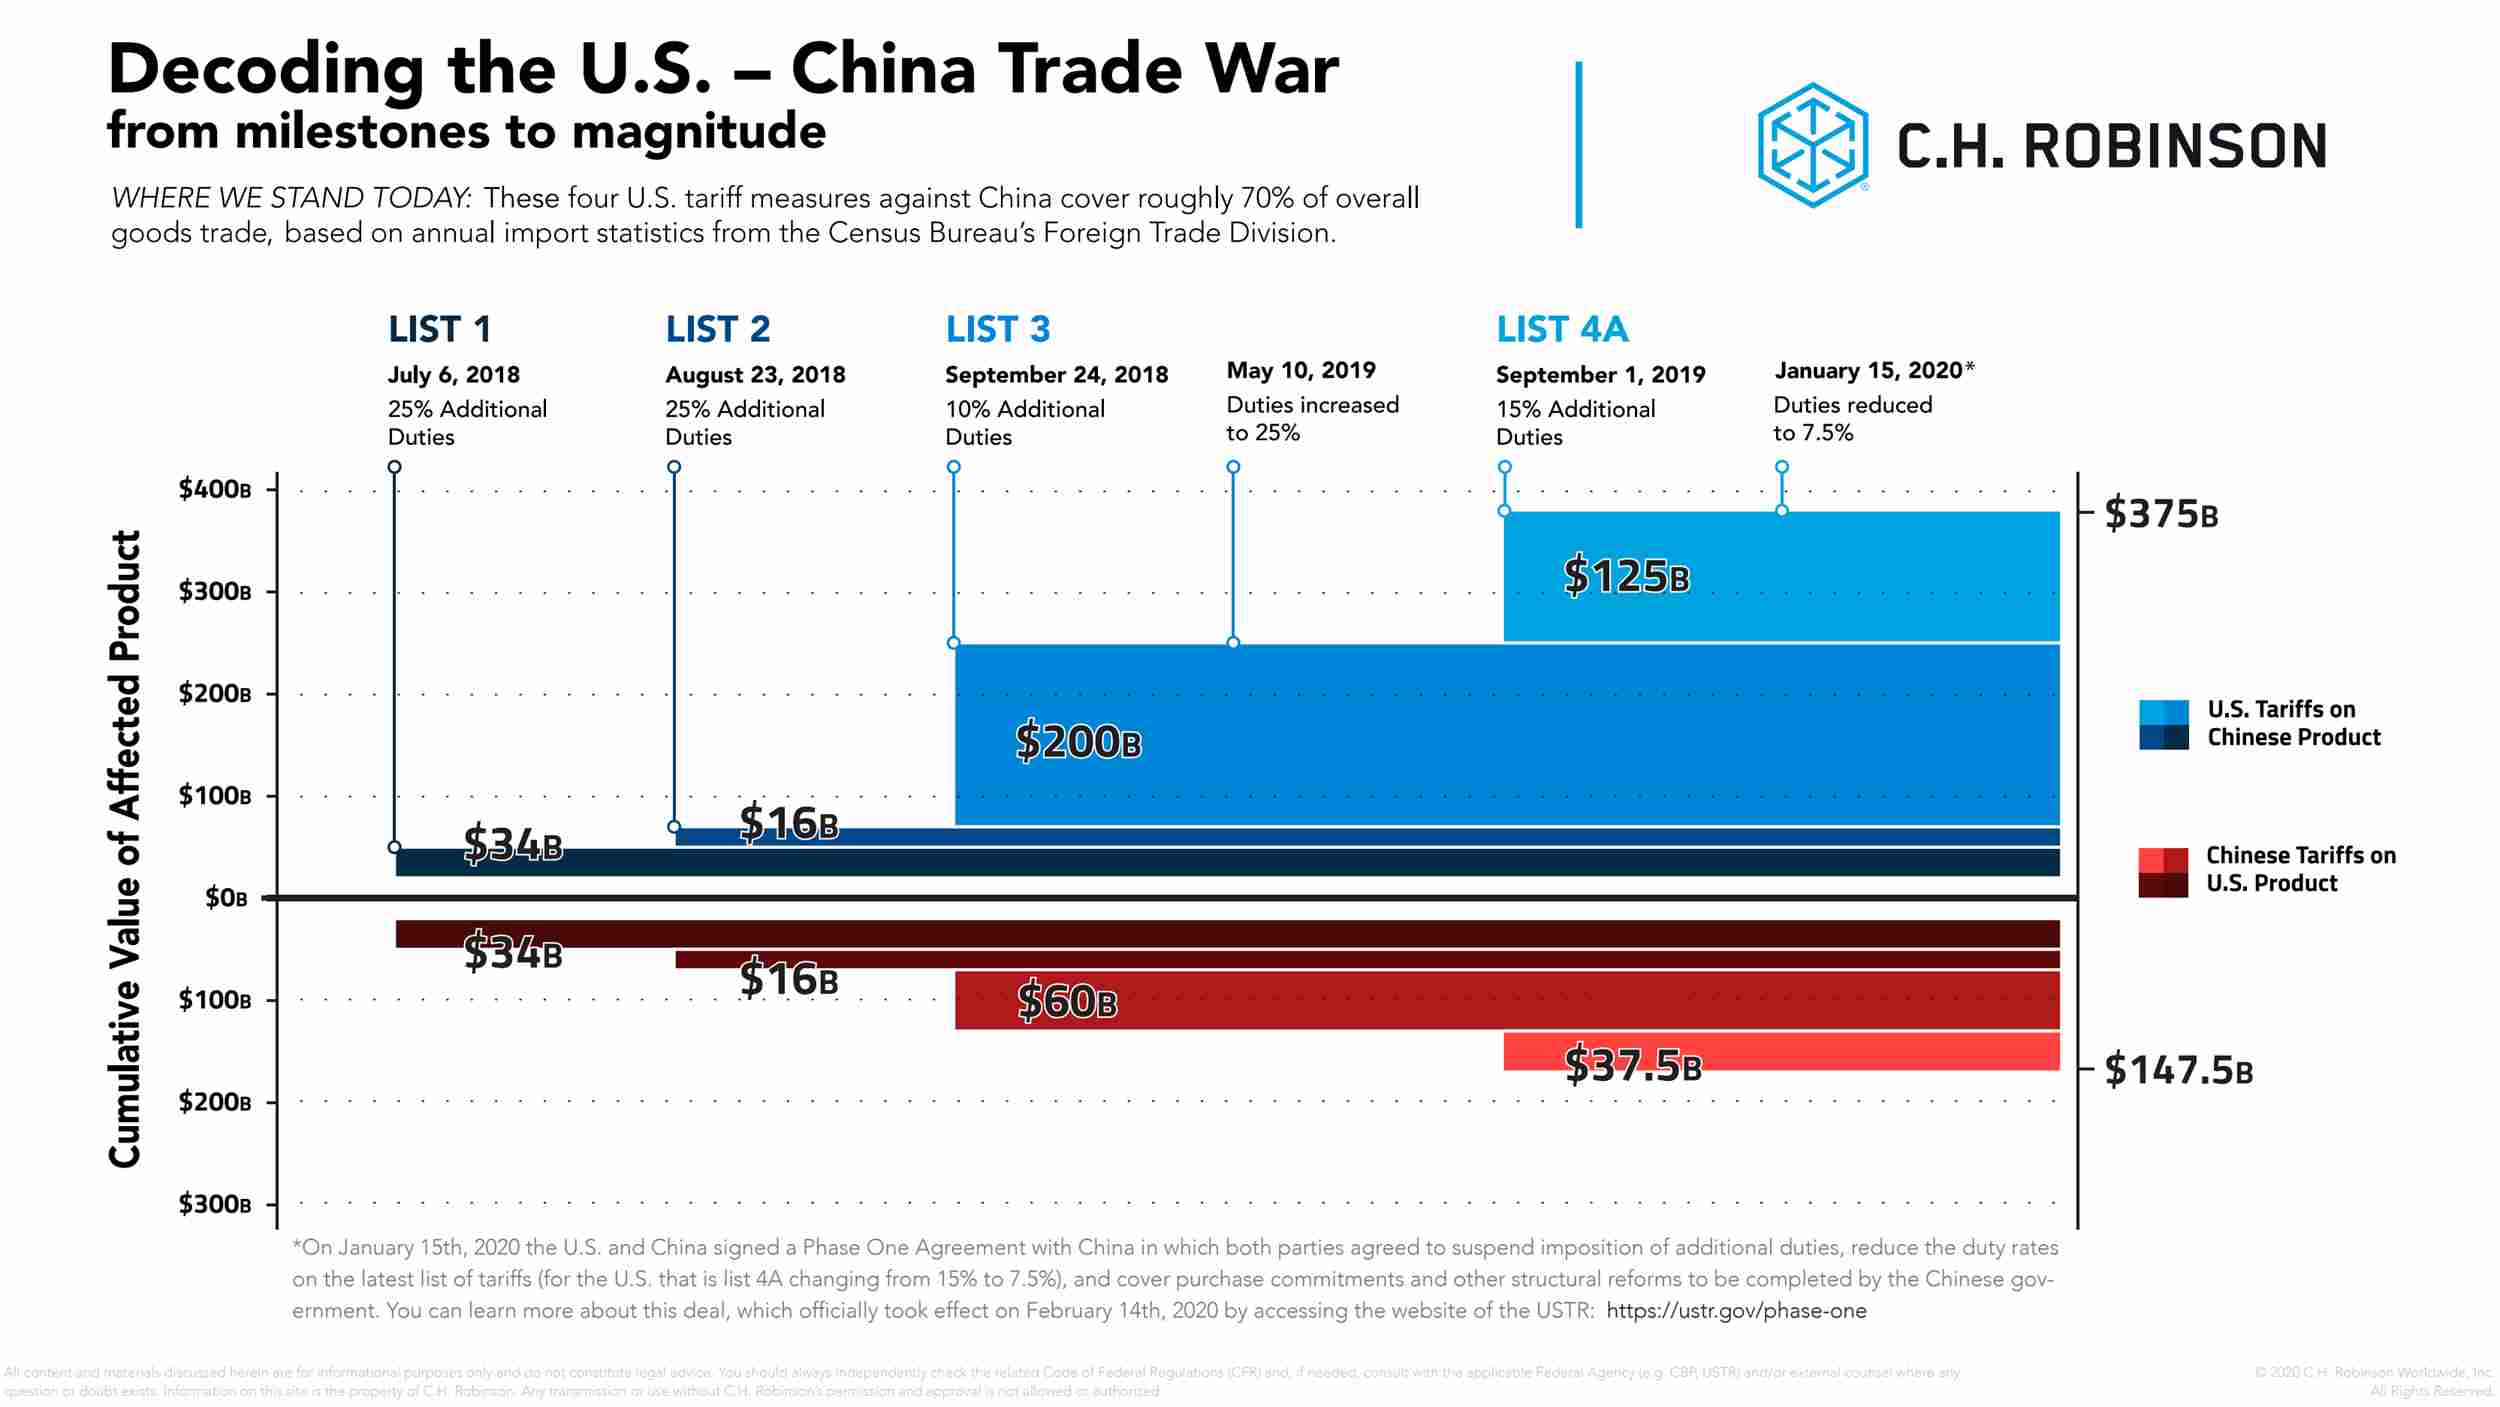 描繪美中貿易戰解碼的圖表